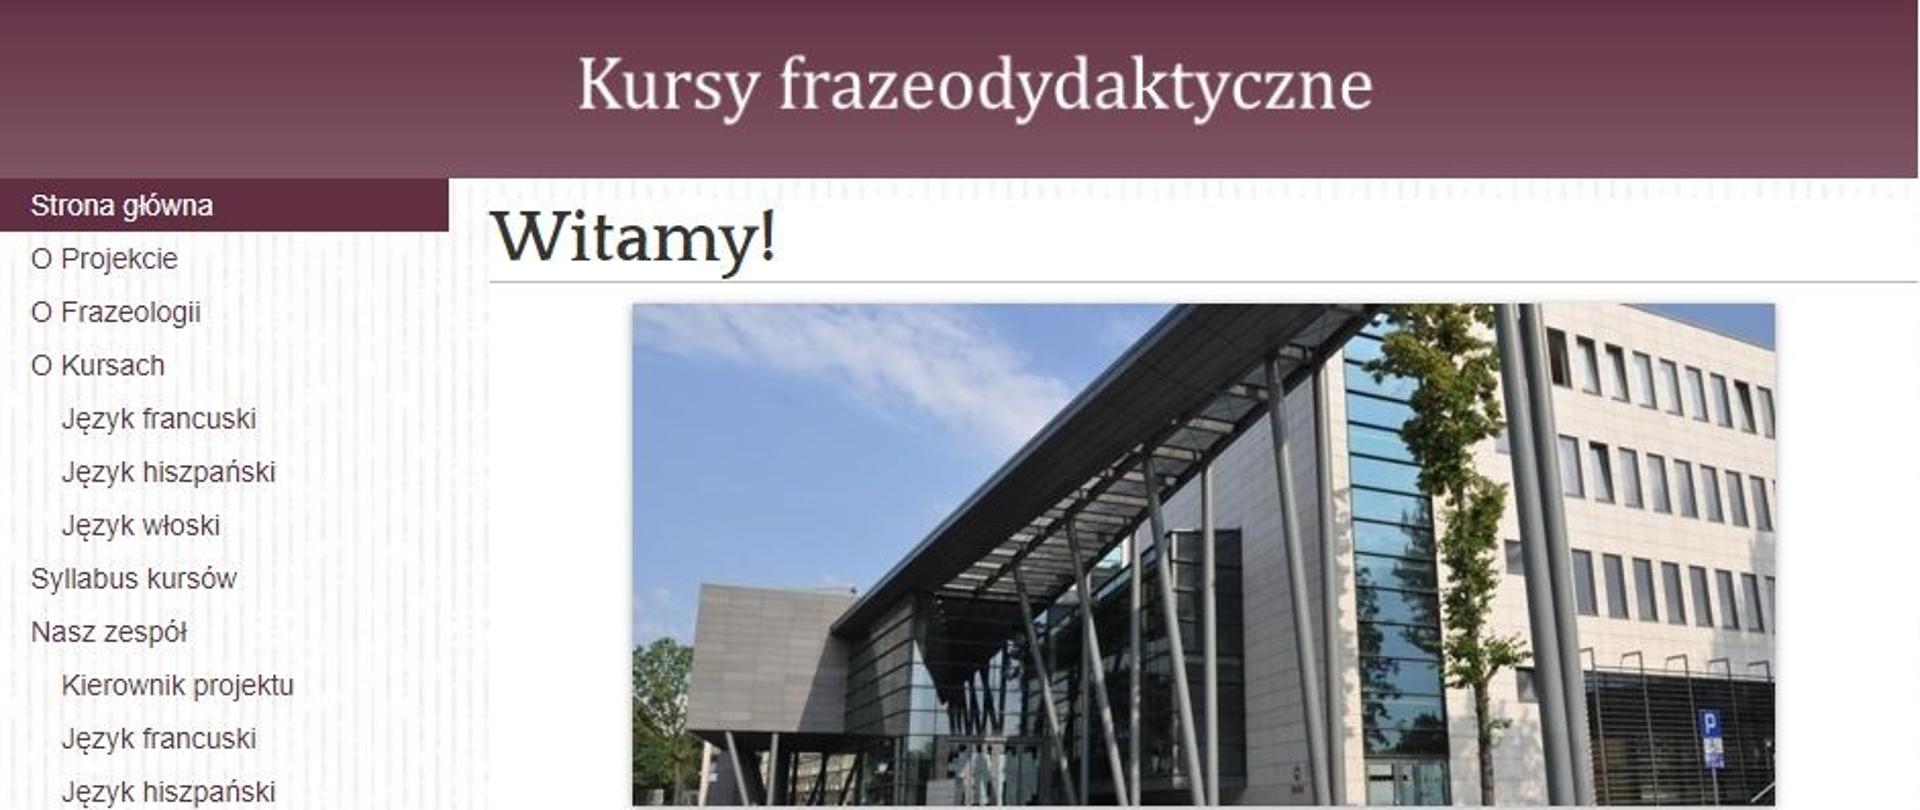 Project website: www.kursyfrazeo.us.edu.pl
